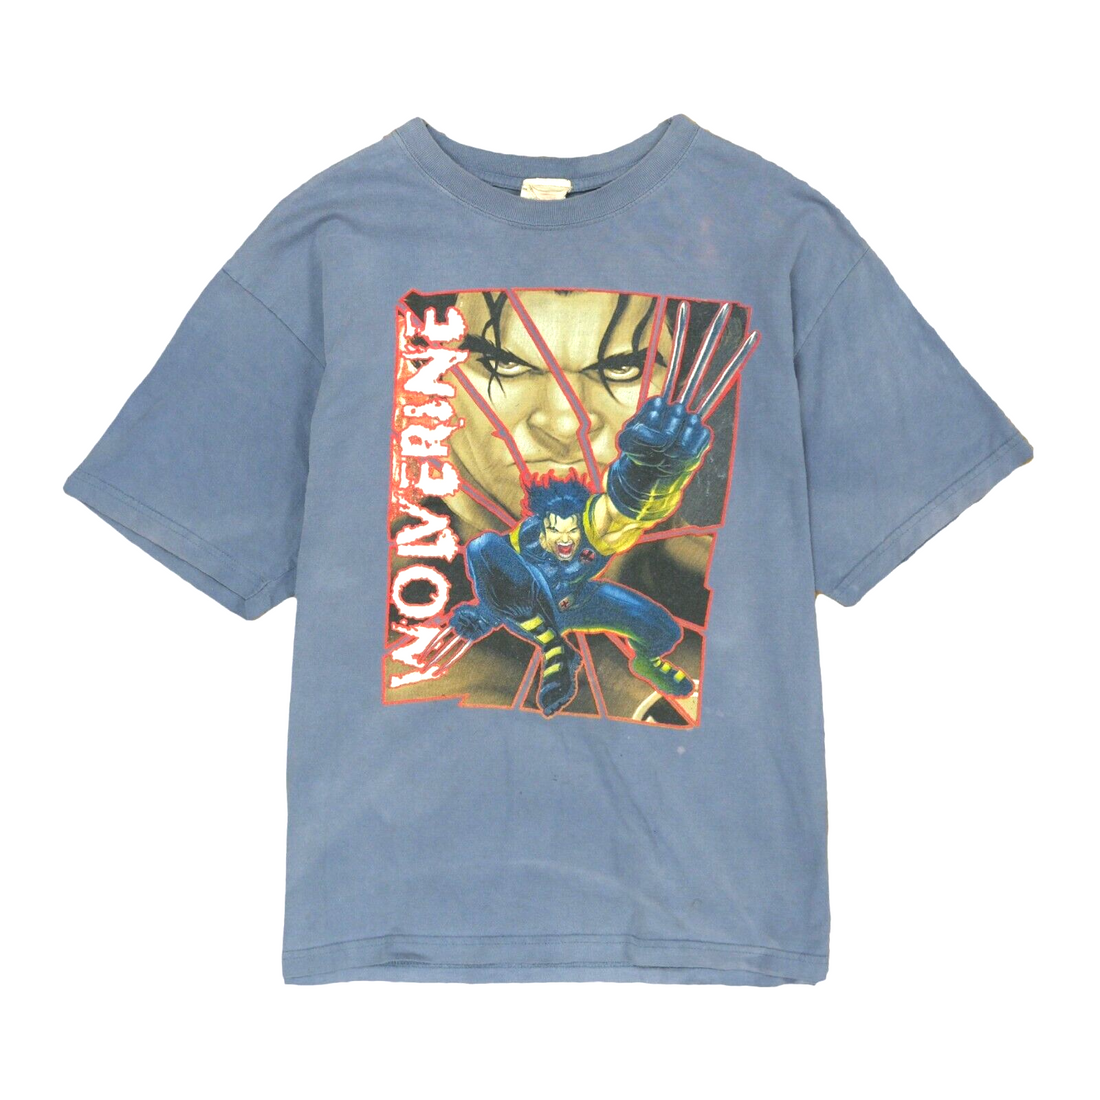 Vintage Wolverine X-Men Novel Teez T-Shirt Size Medium Blue Marvel Comics